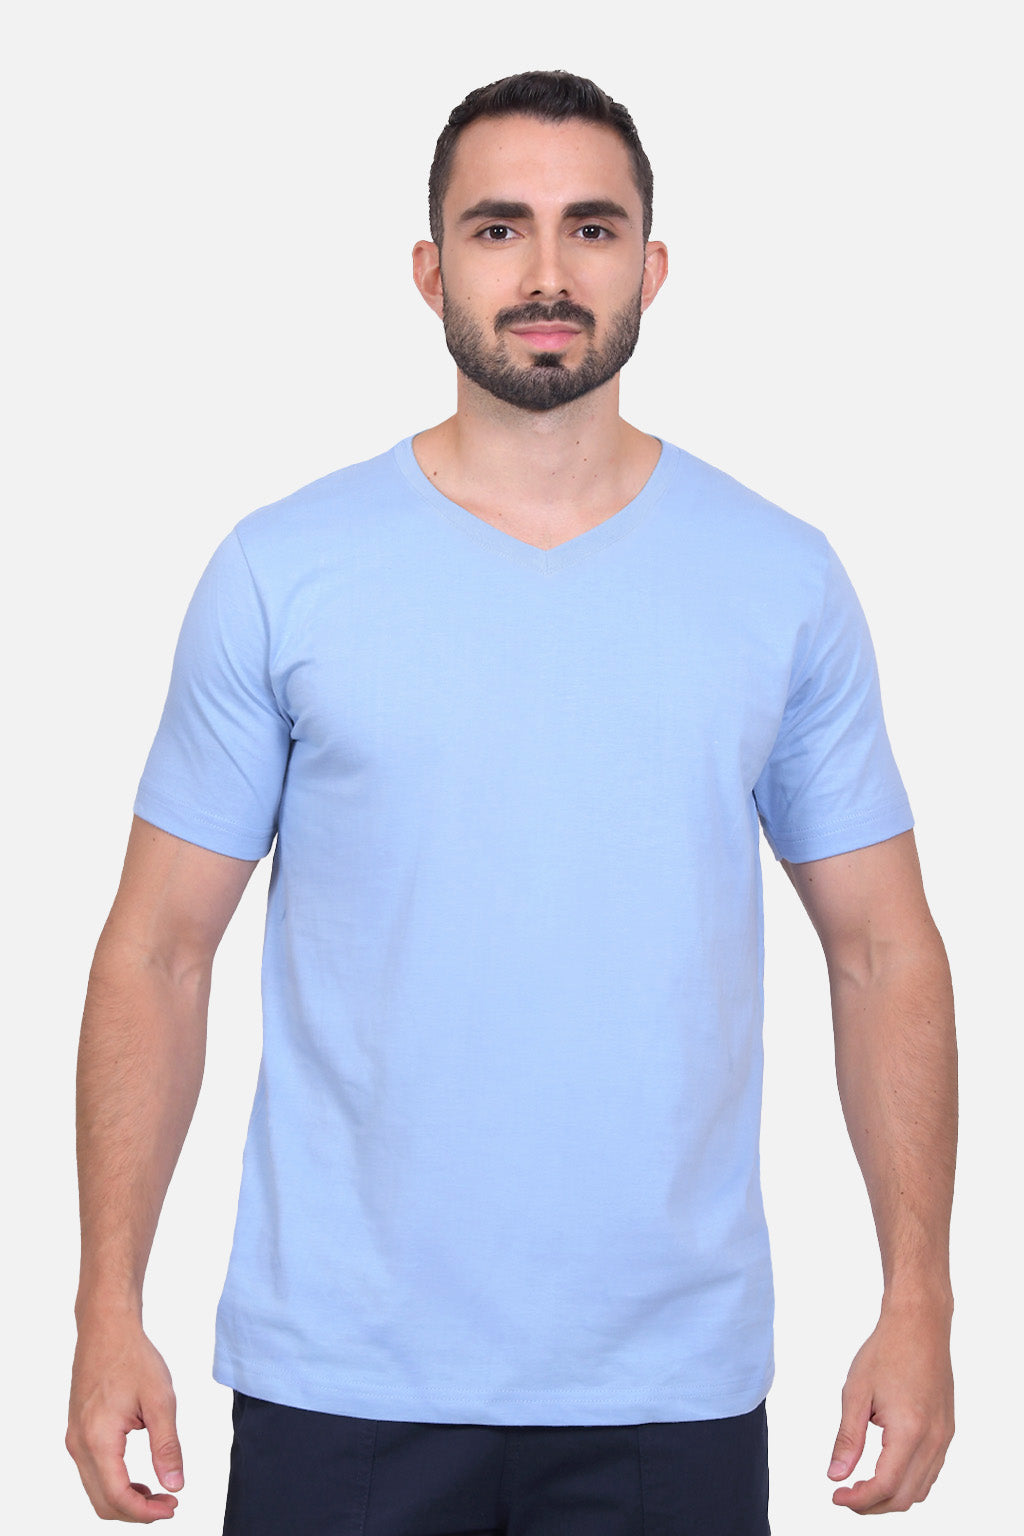 Camiseta Hombre Azul Claro 